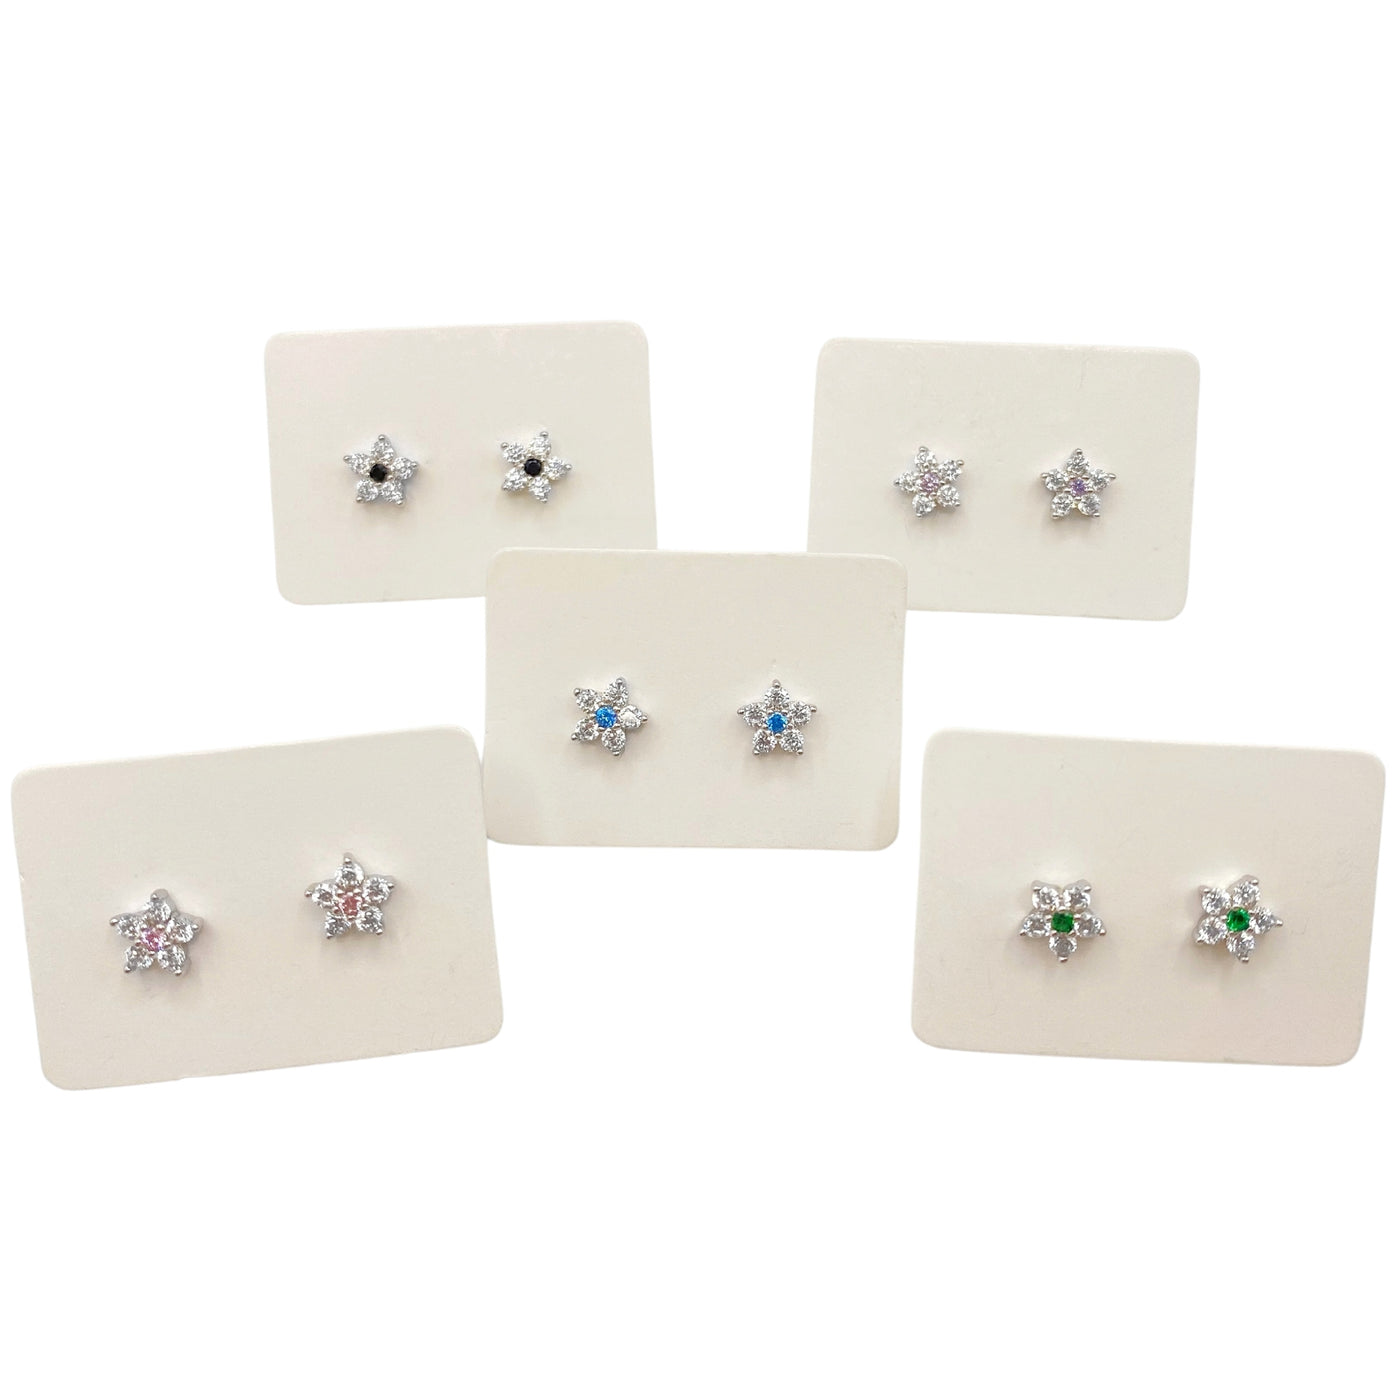 Pack of 5 stud earrings with zirconia flower